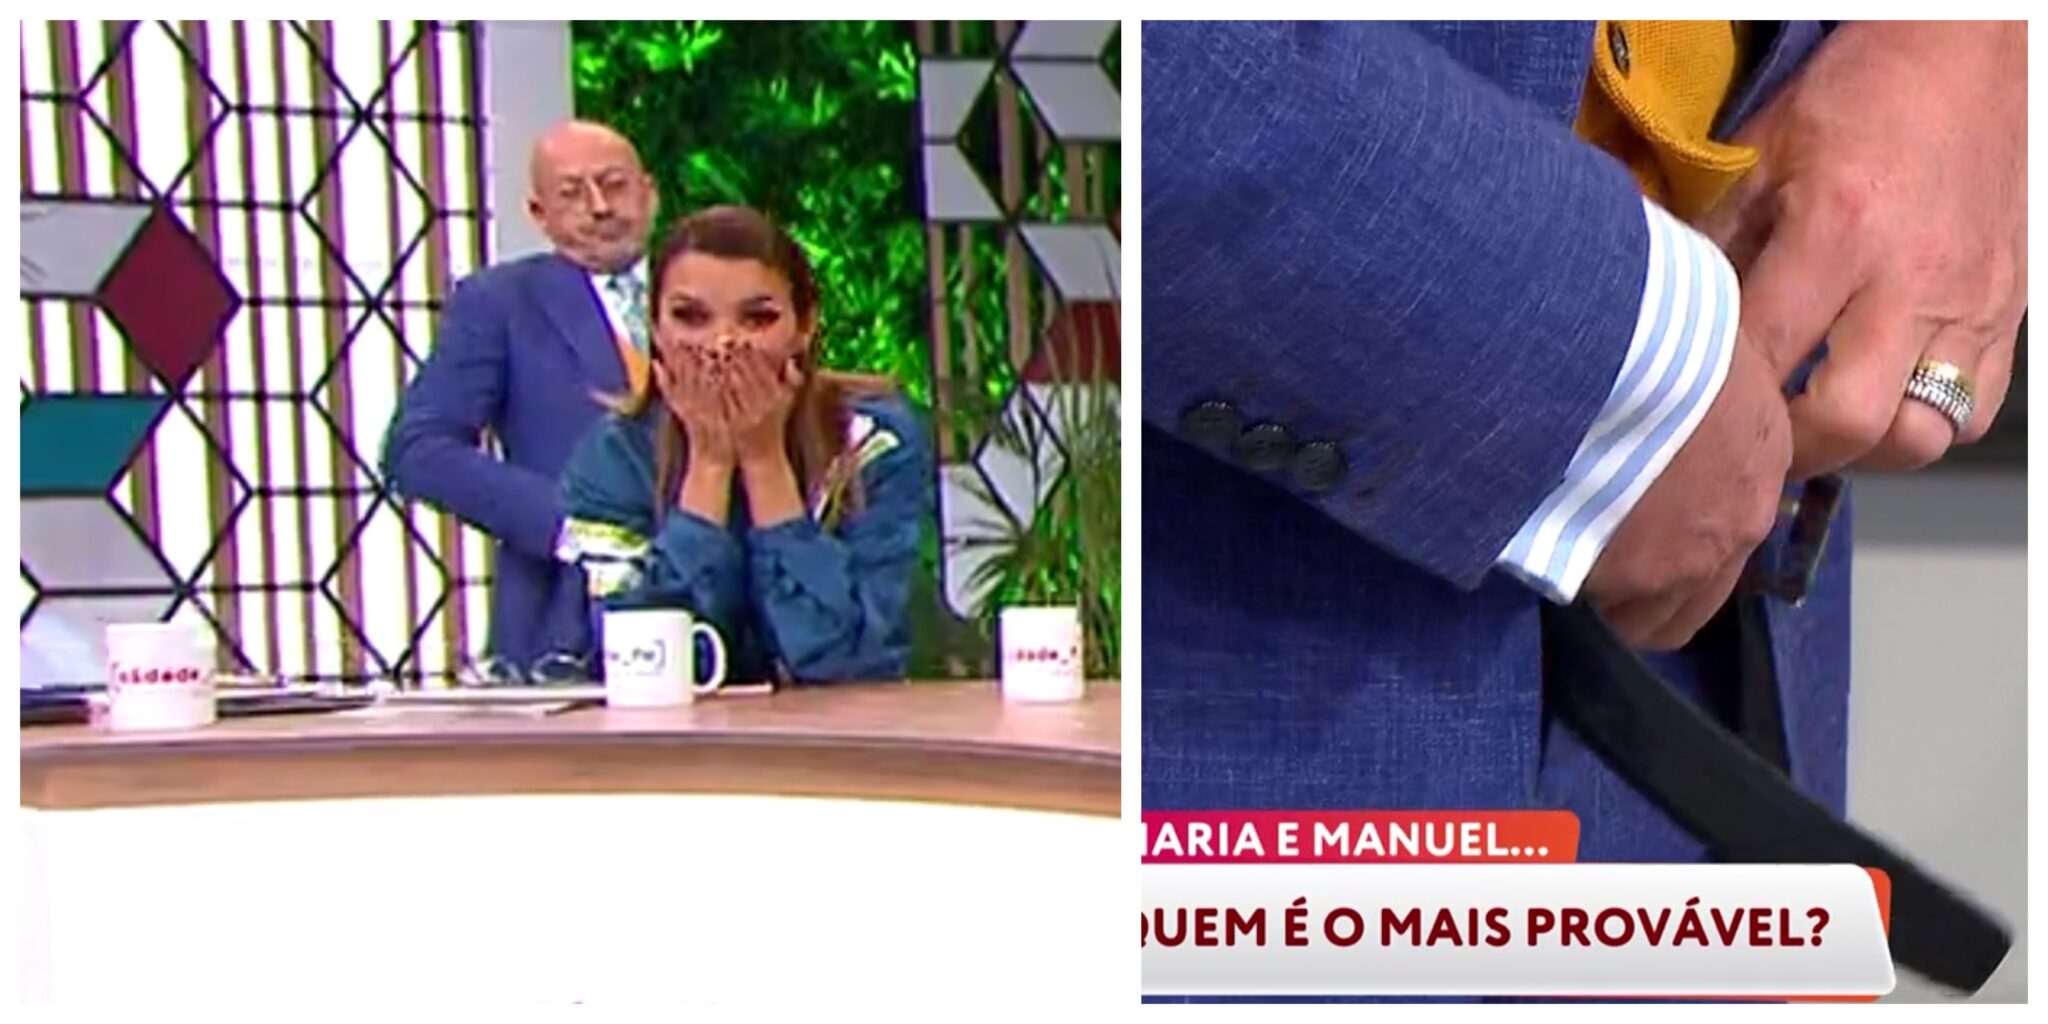 Manuel Luis Goucha Tira Calcas Voce Na Tv Scaled Goucha Mostra Roupa Interior Em Direto No 'Você Na Tv'